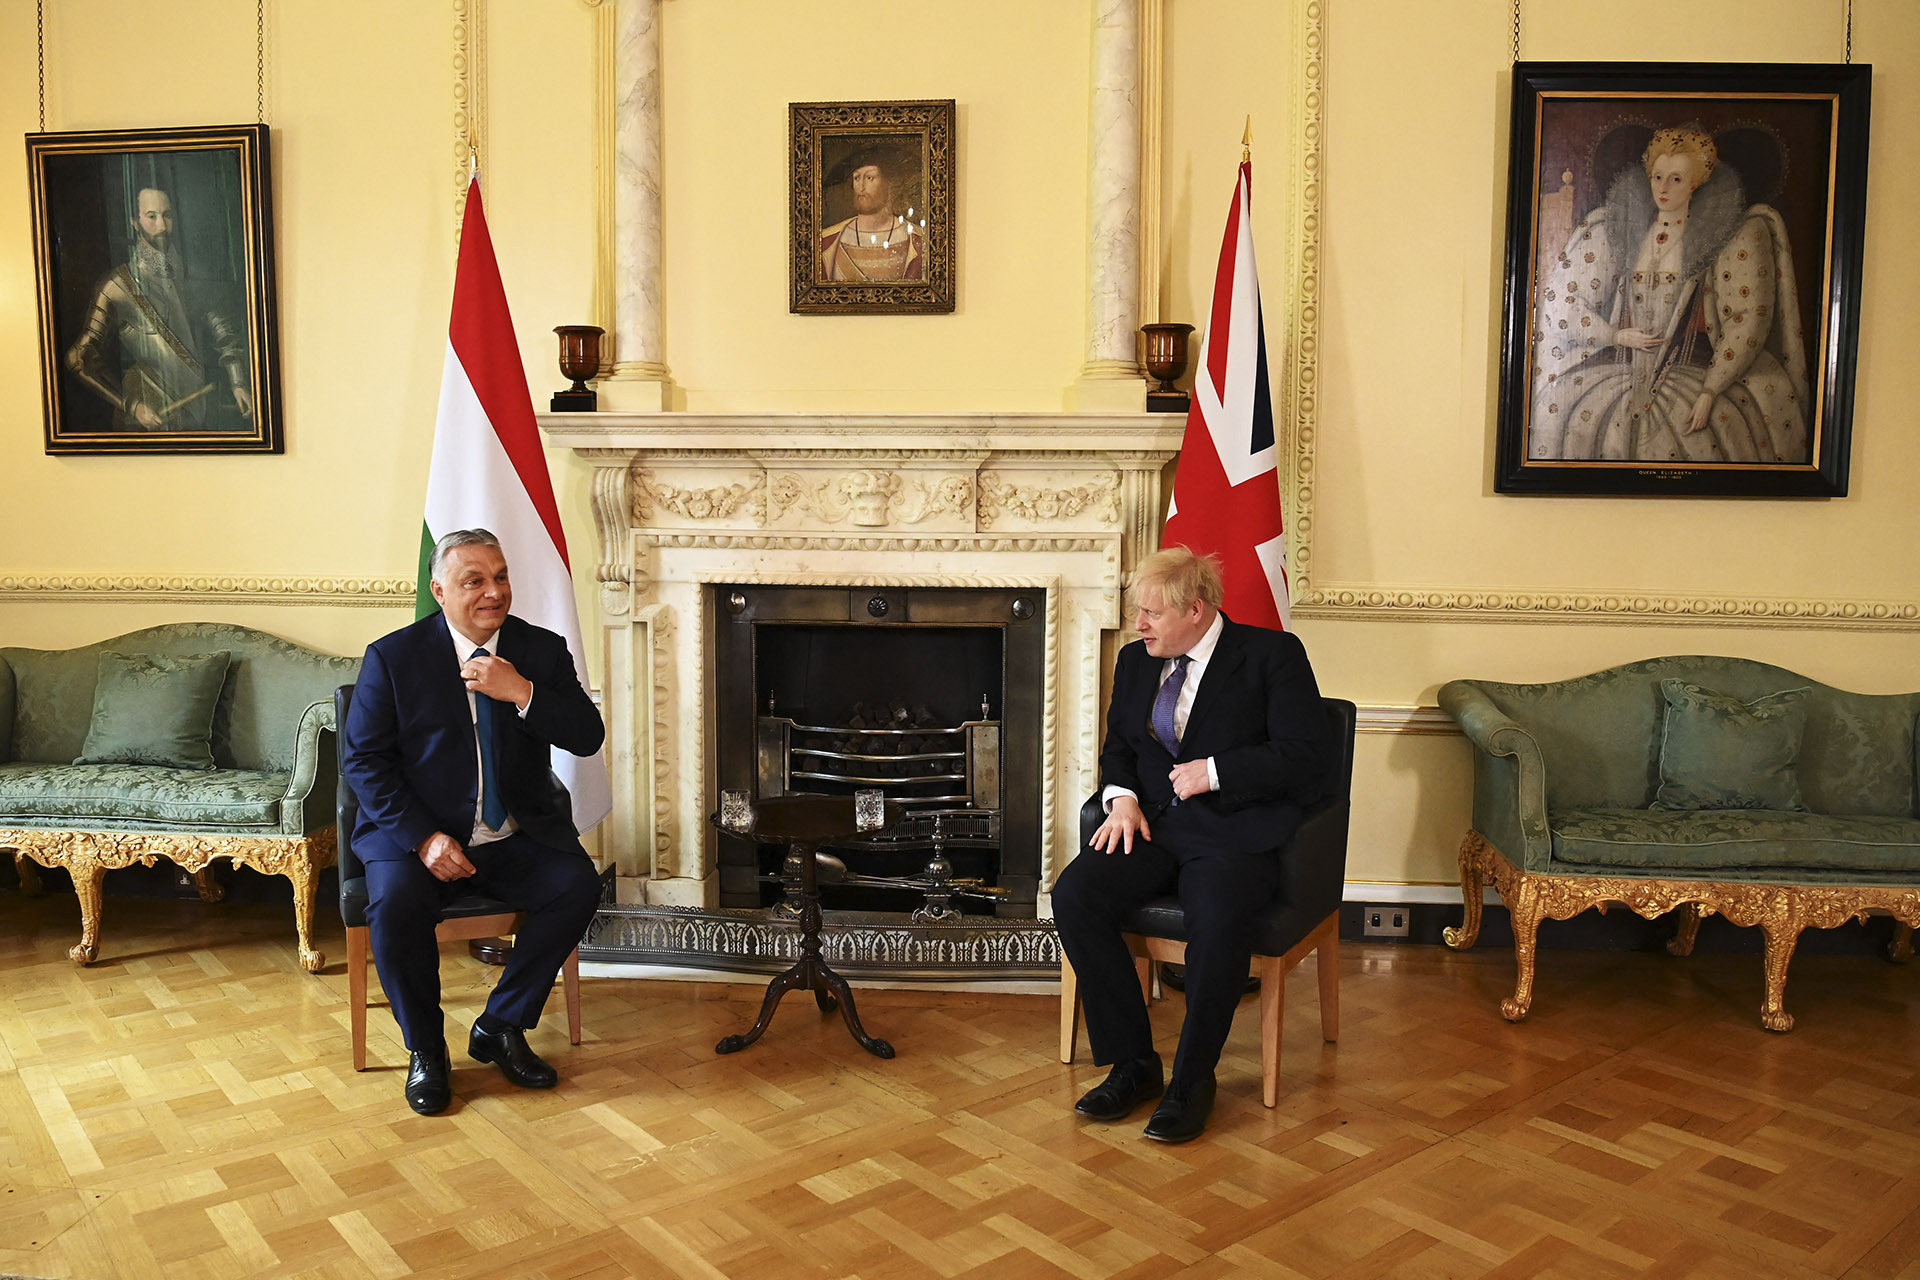 'Miniszterelnök úr, mi dolga van Britanniának Putyin barátjával?' – videón Orbán és Boris Johnson találkozása